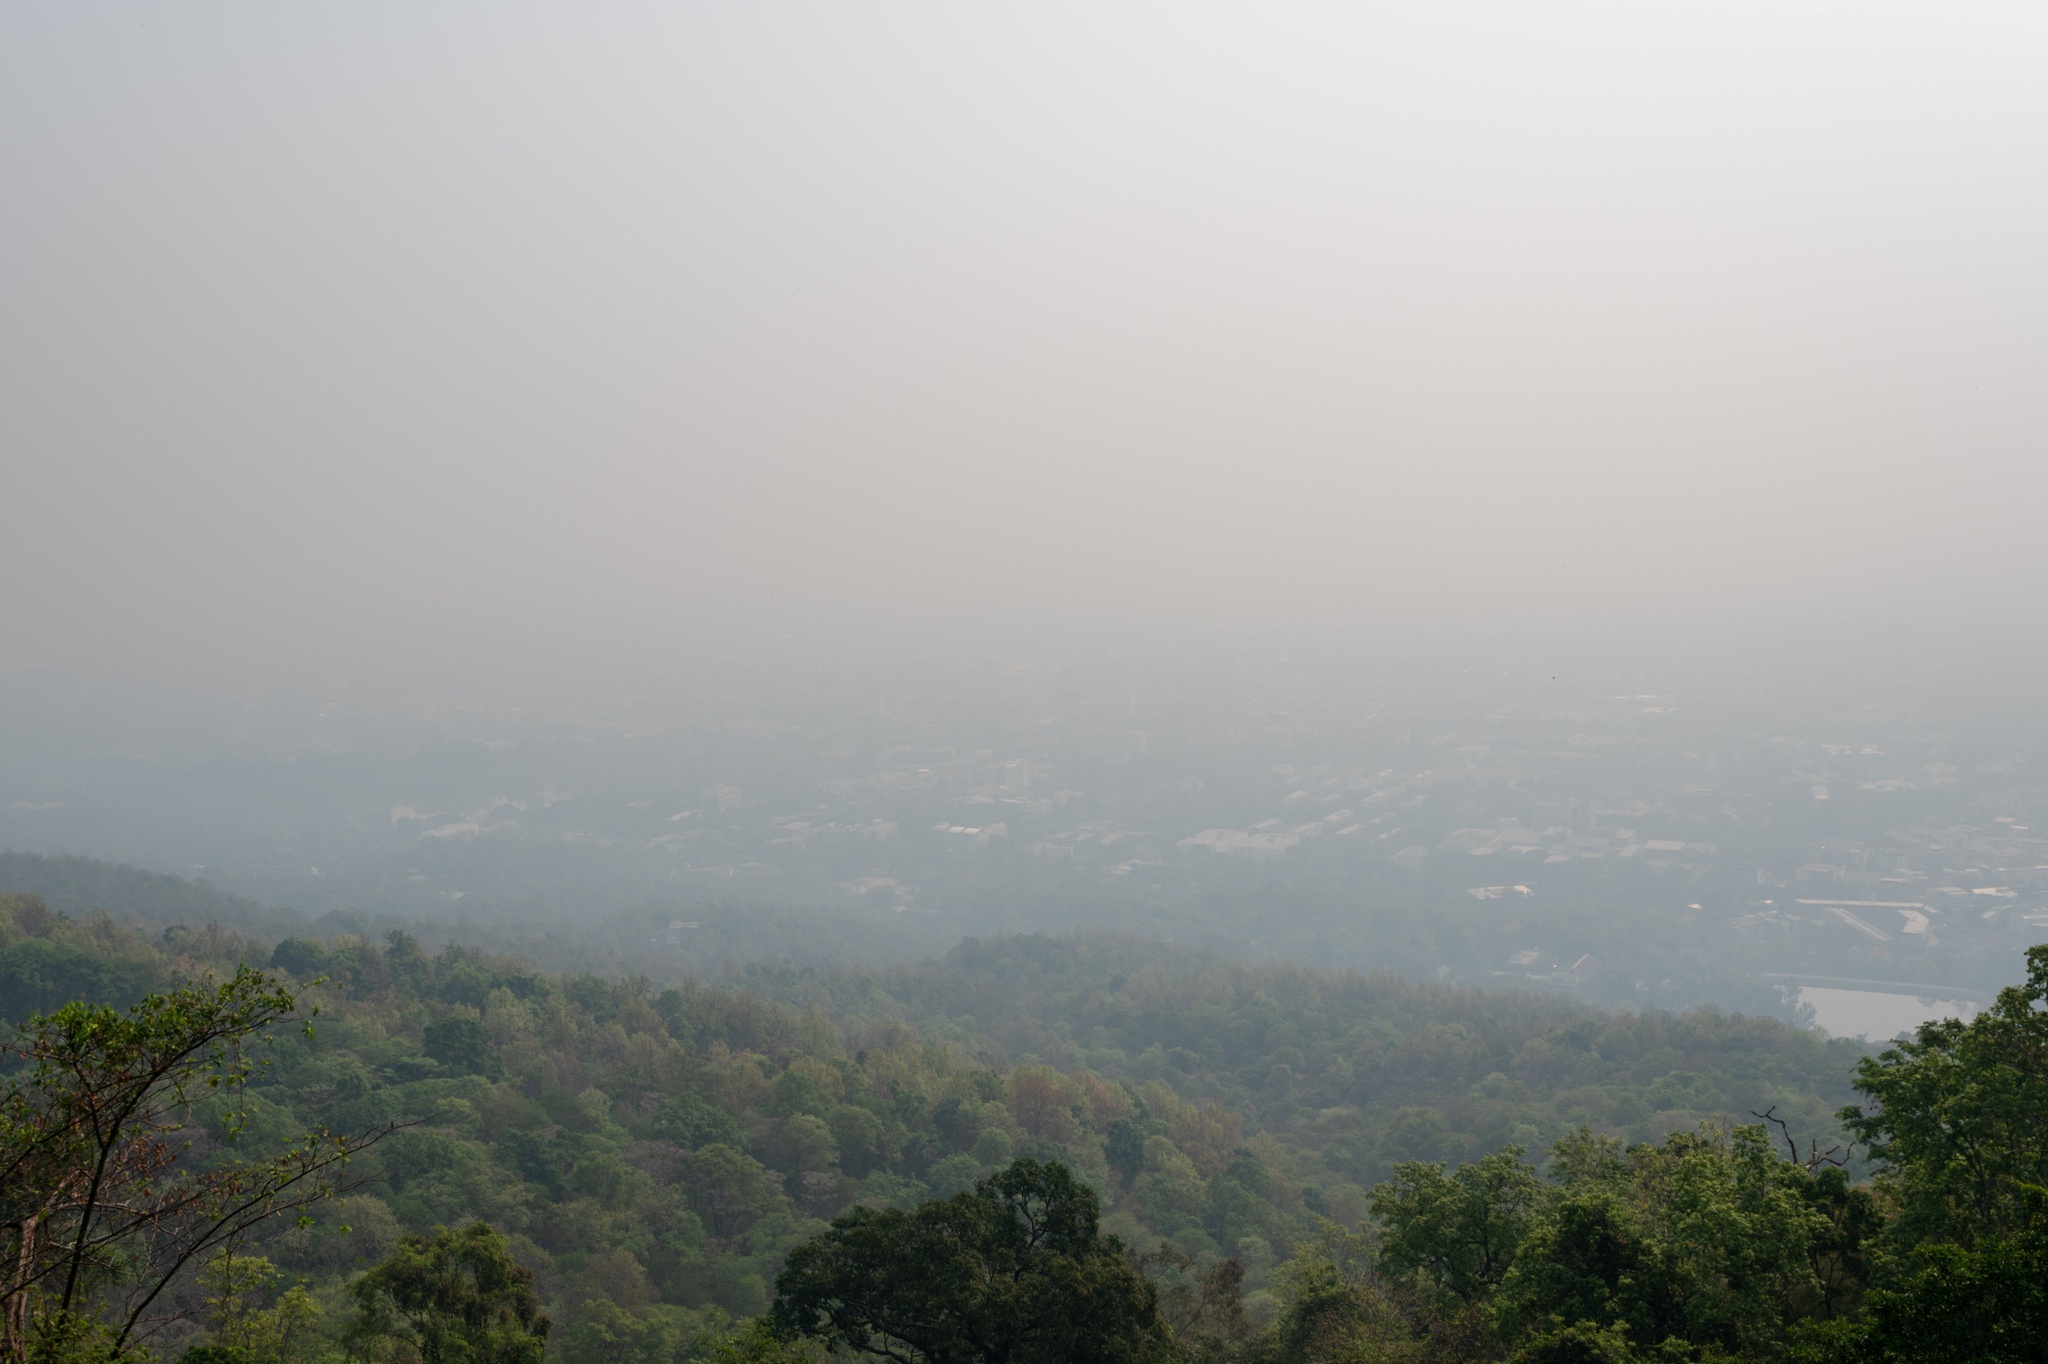 La contaminación ahoga el norte de Tailandia, daña el turismo y preocupa a la gente |  Tailandia